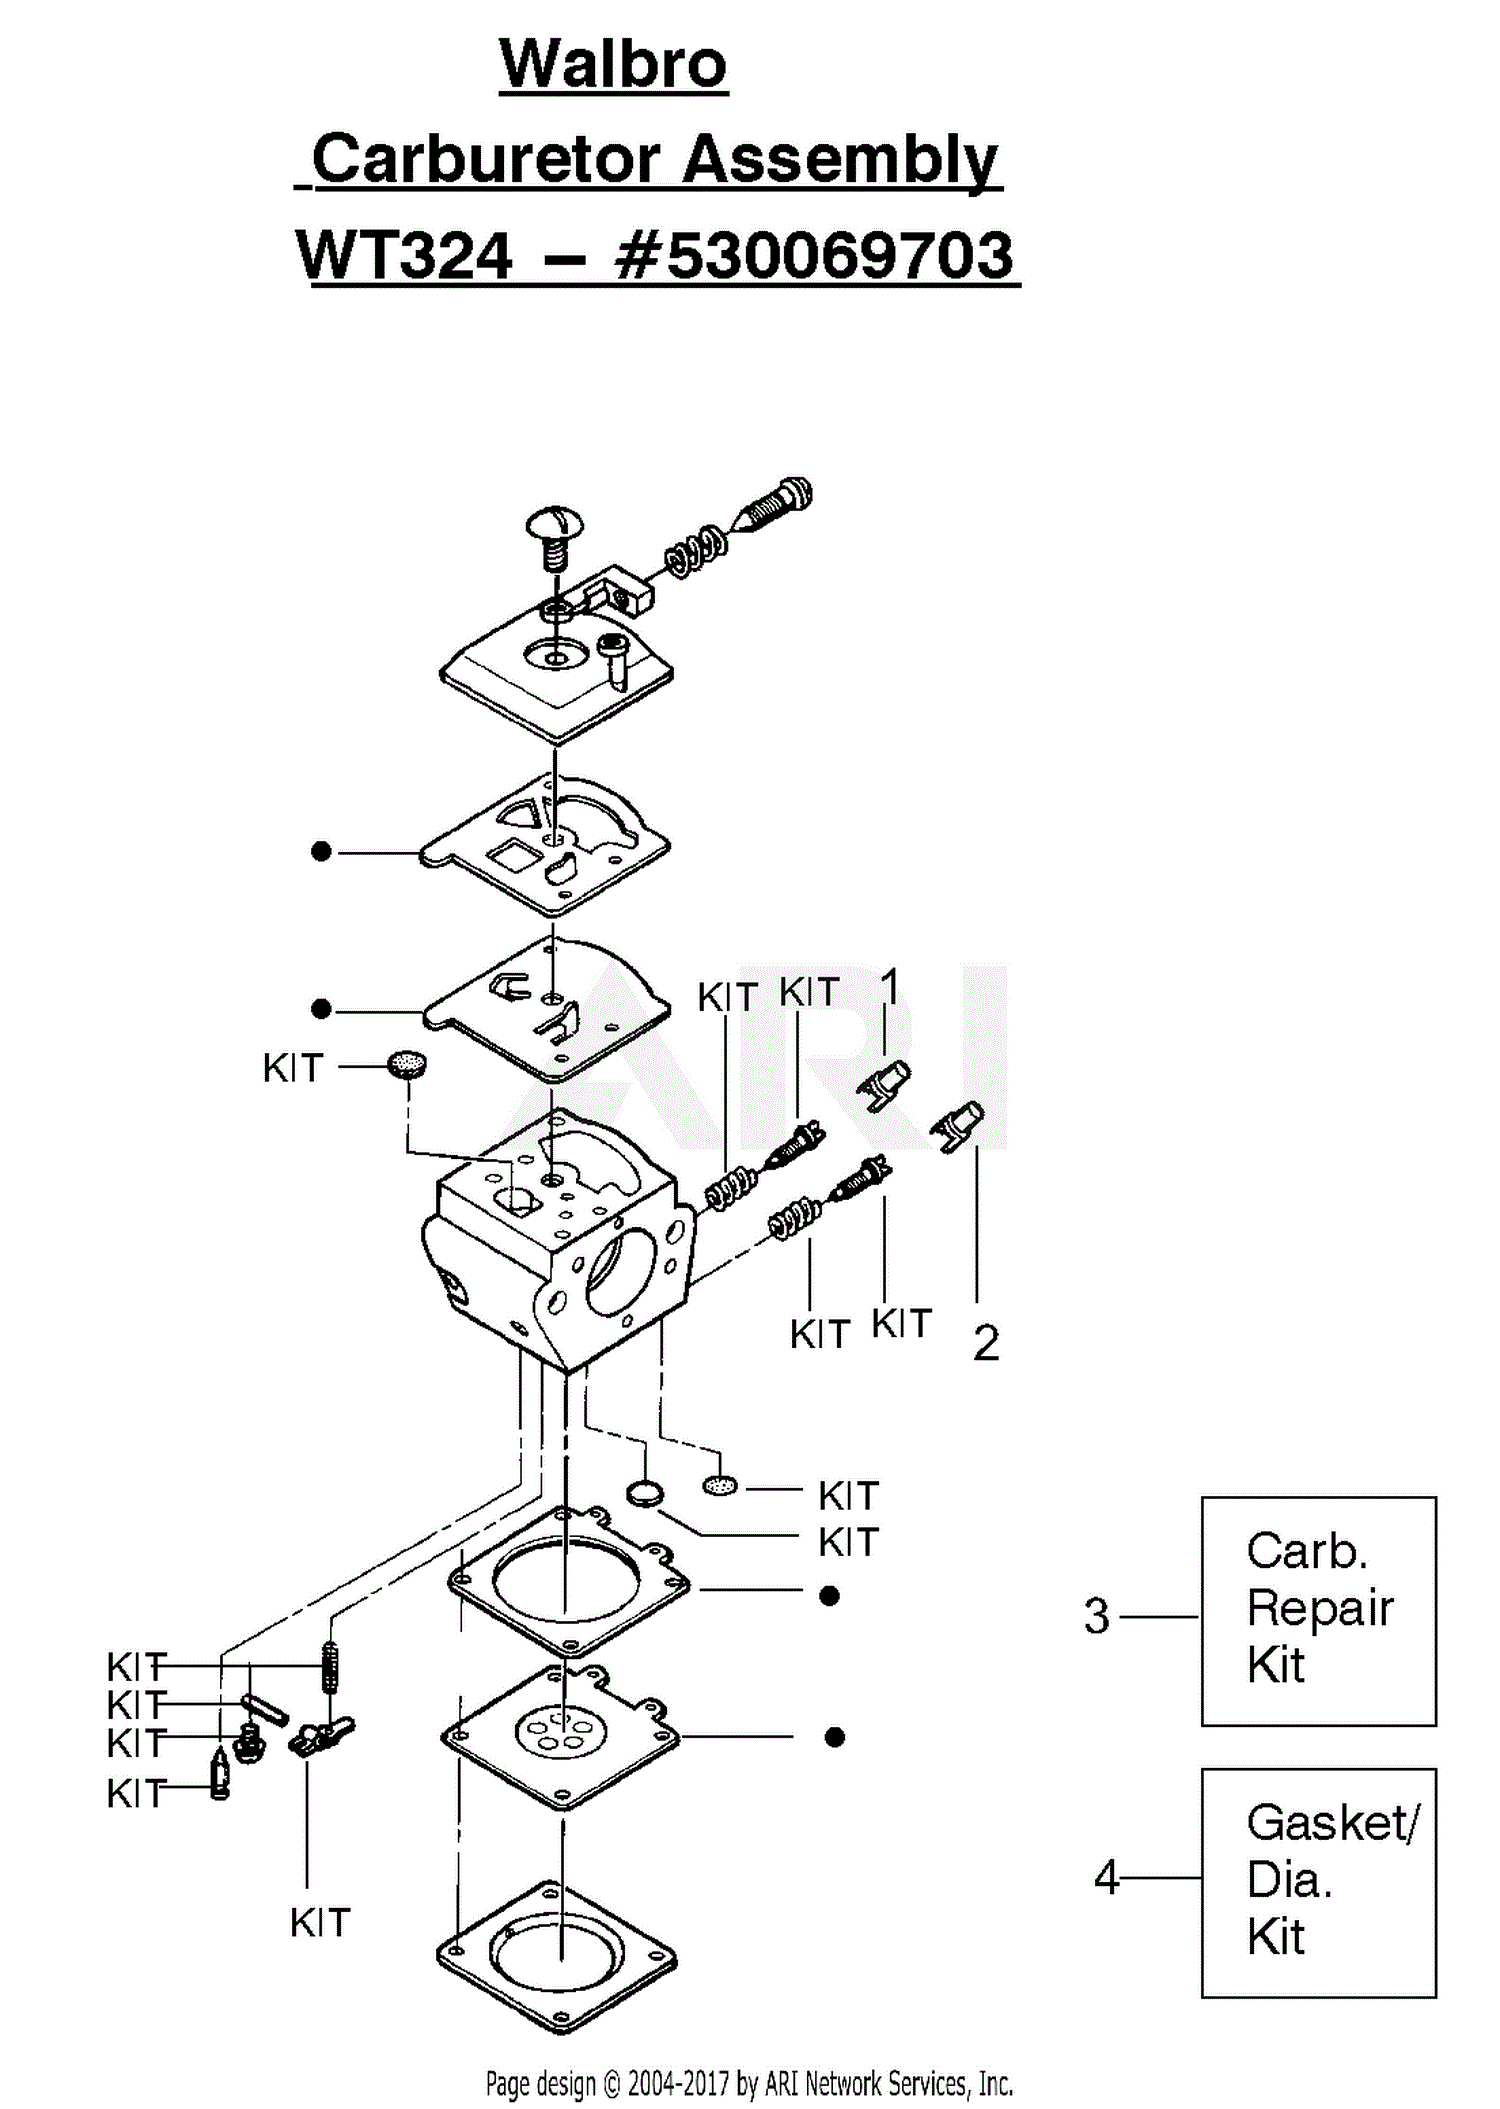 z225 wiring diagram